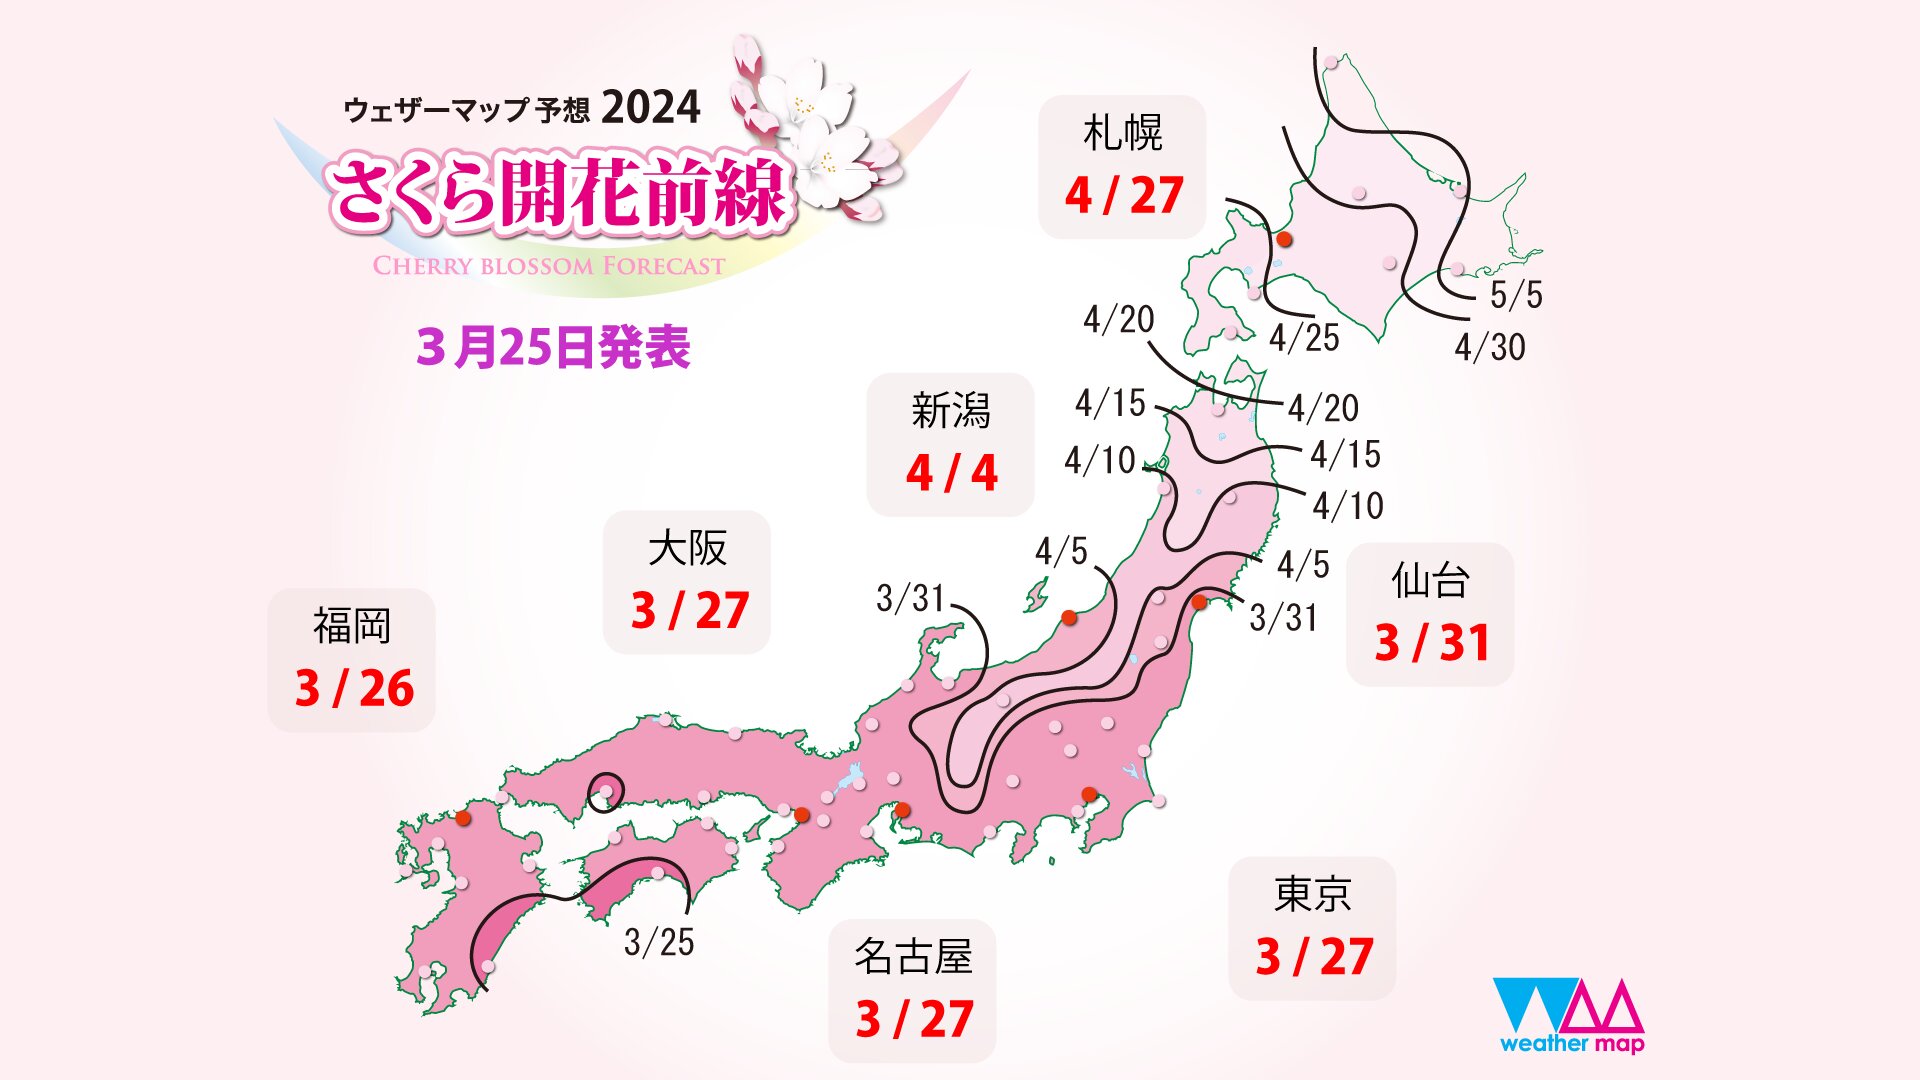 3月25日発表の開花予想（出典ウェザーマップ）